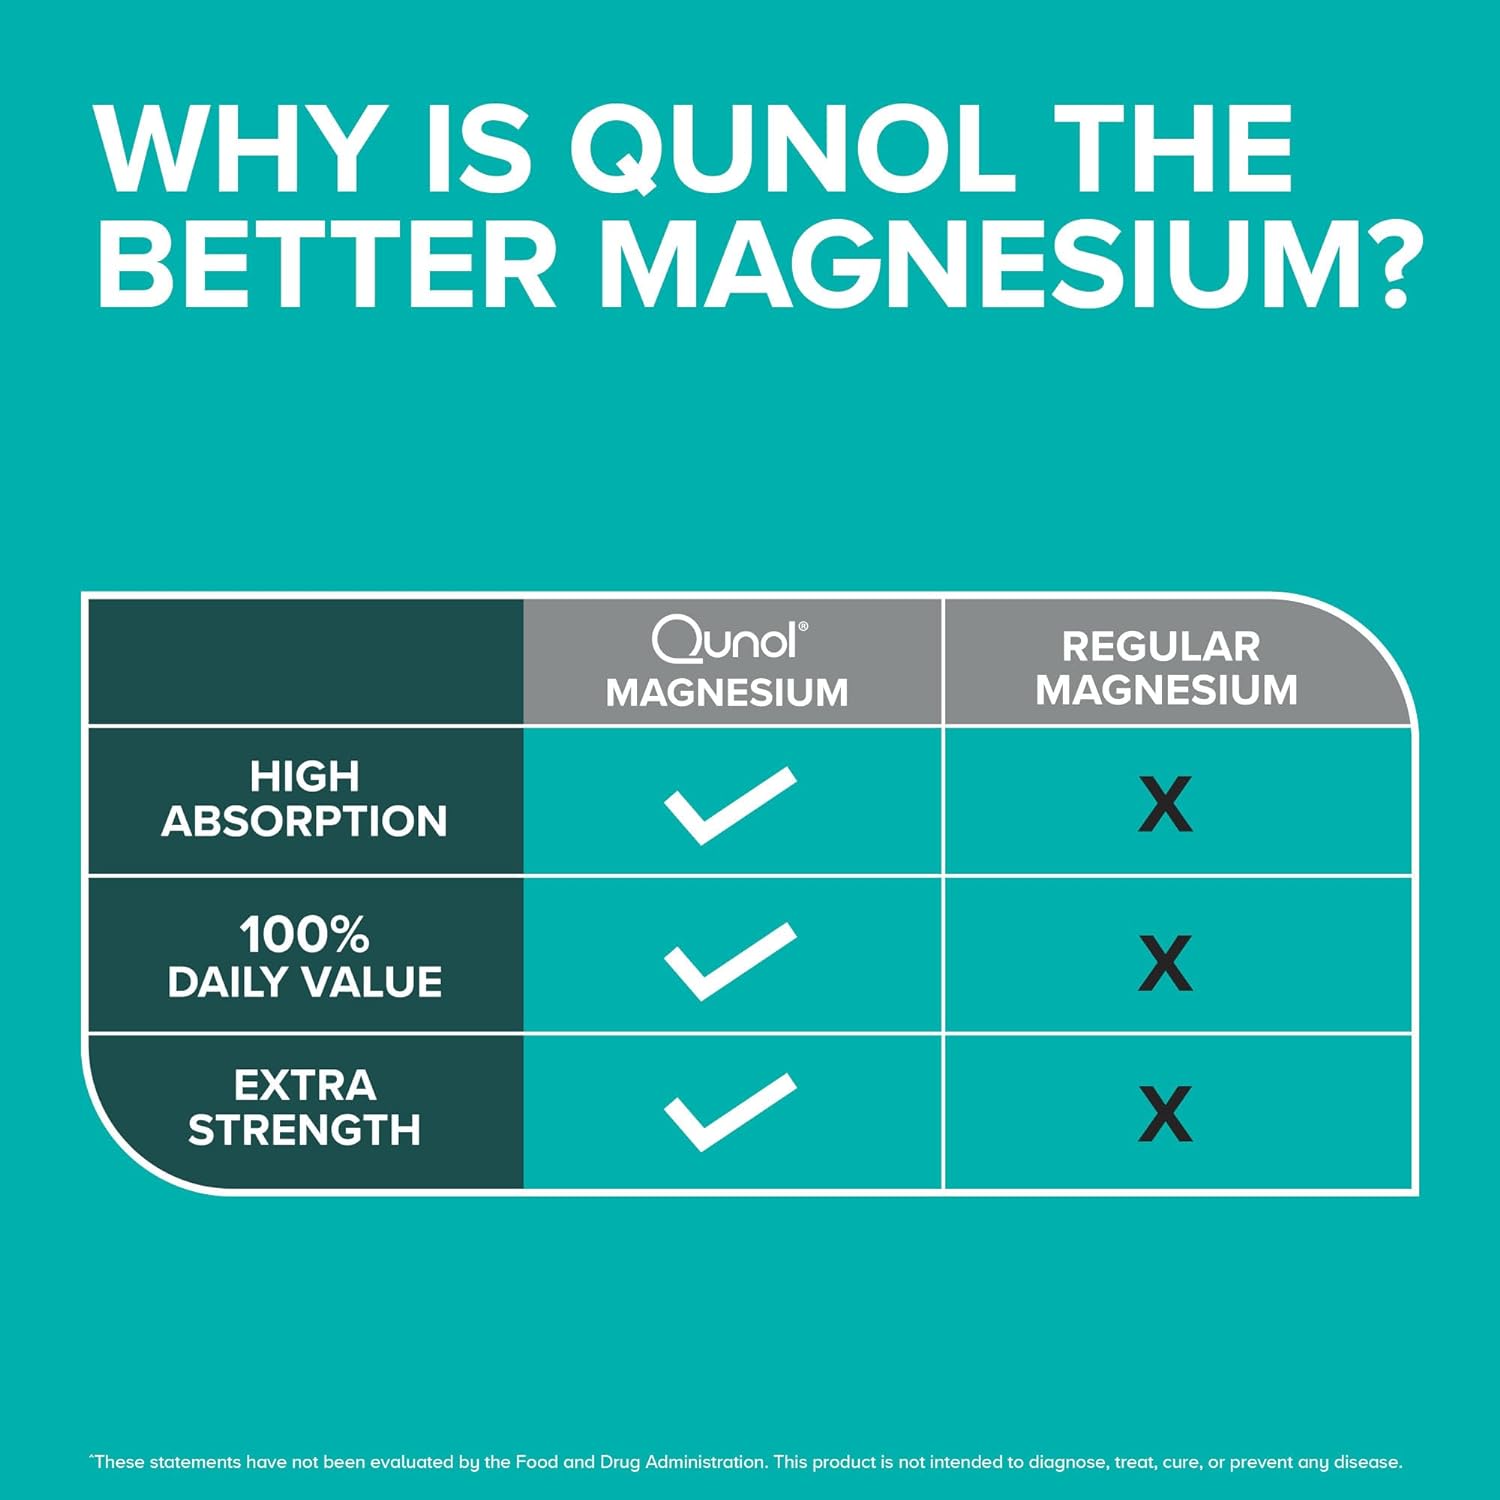 Qunol Magnesium Glycinate Capsules 420mg, High Absorption Magnesium Su